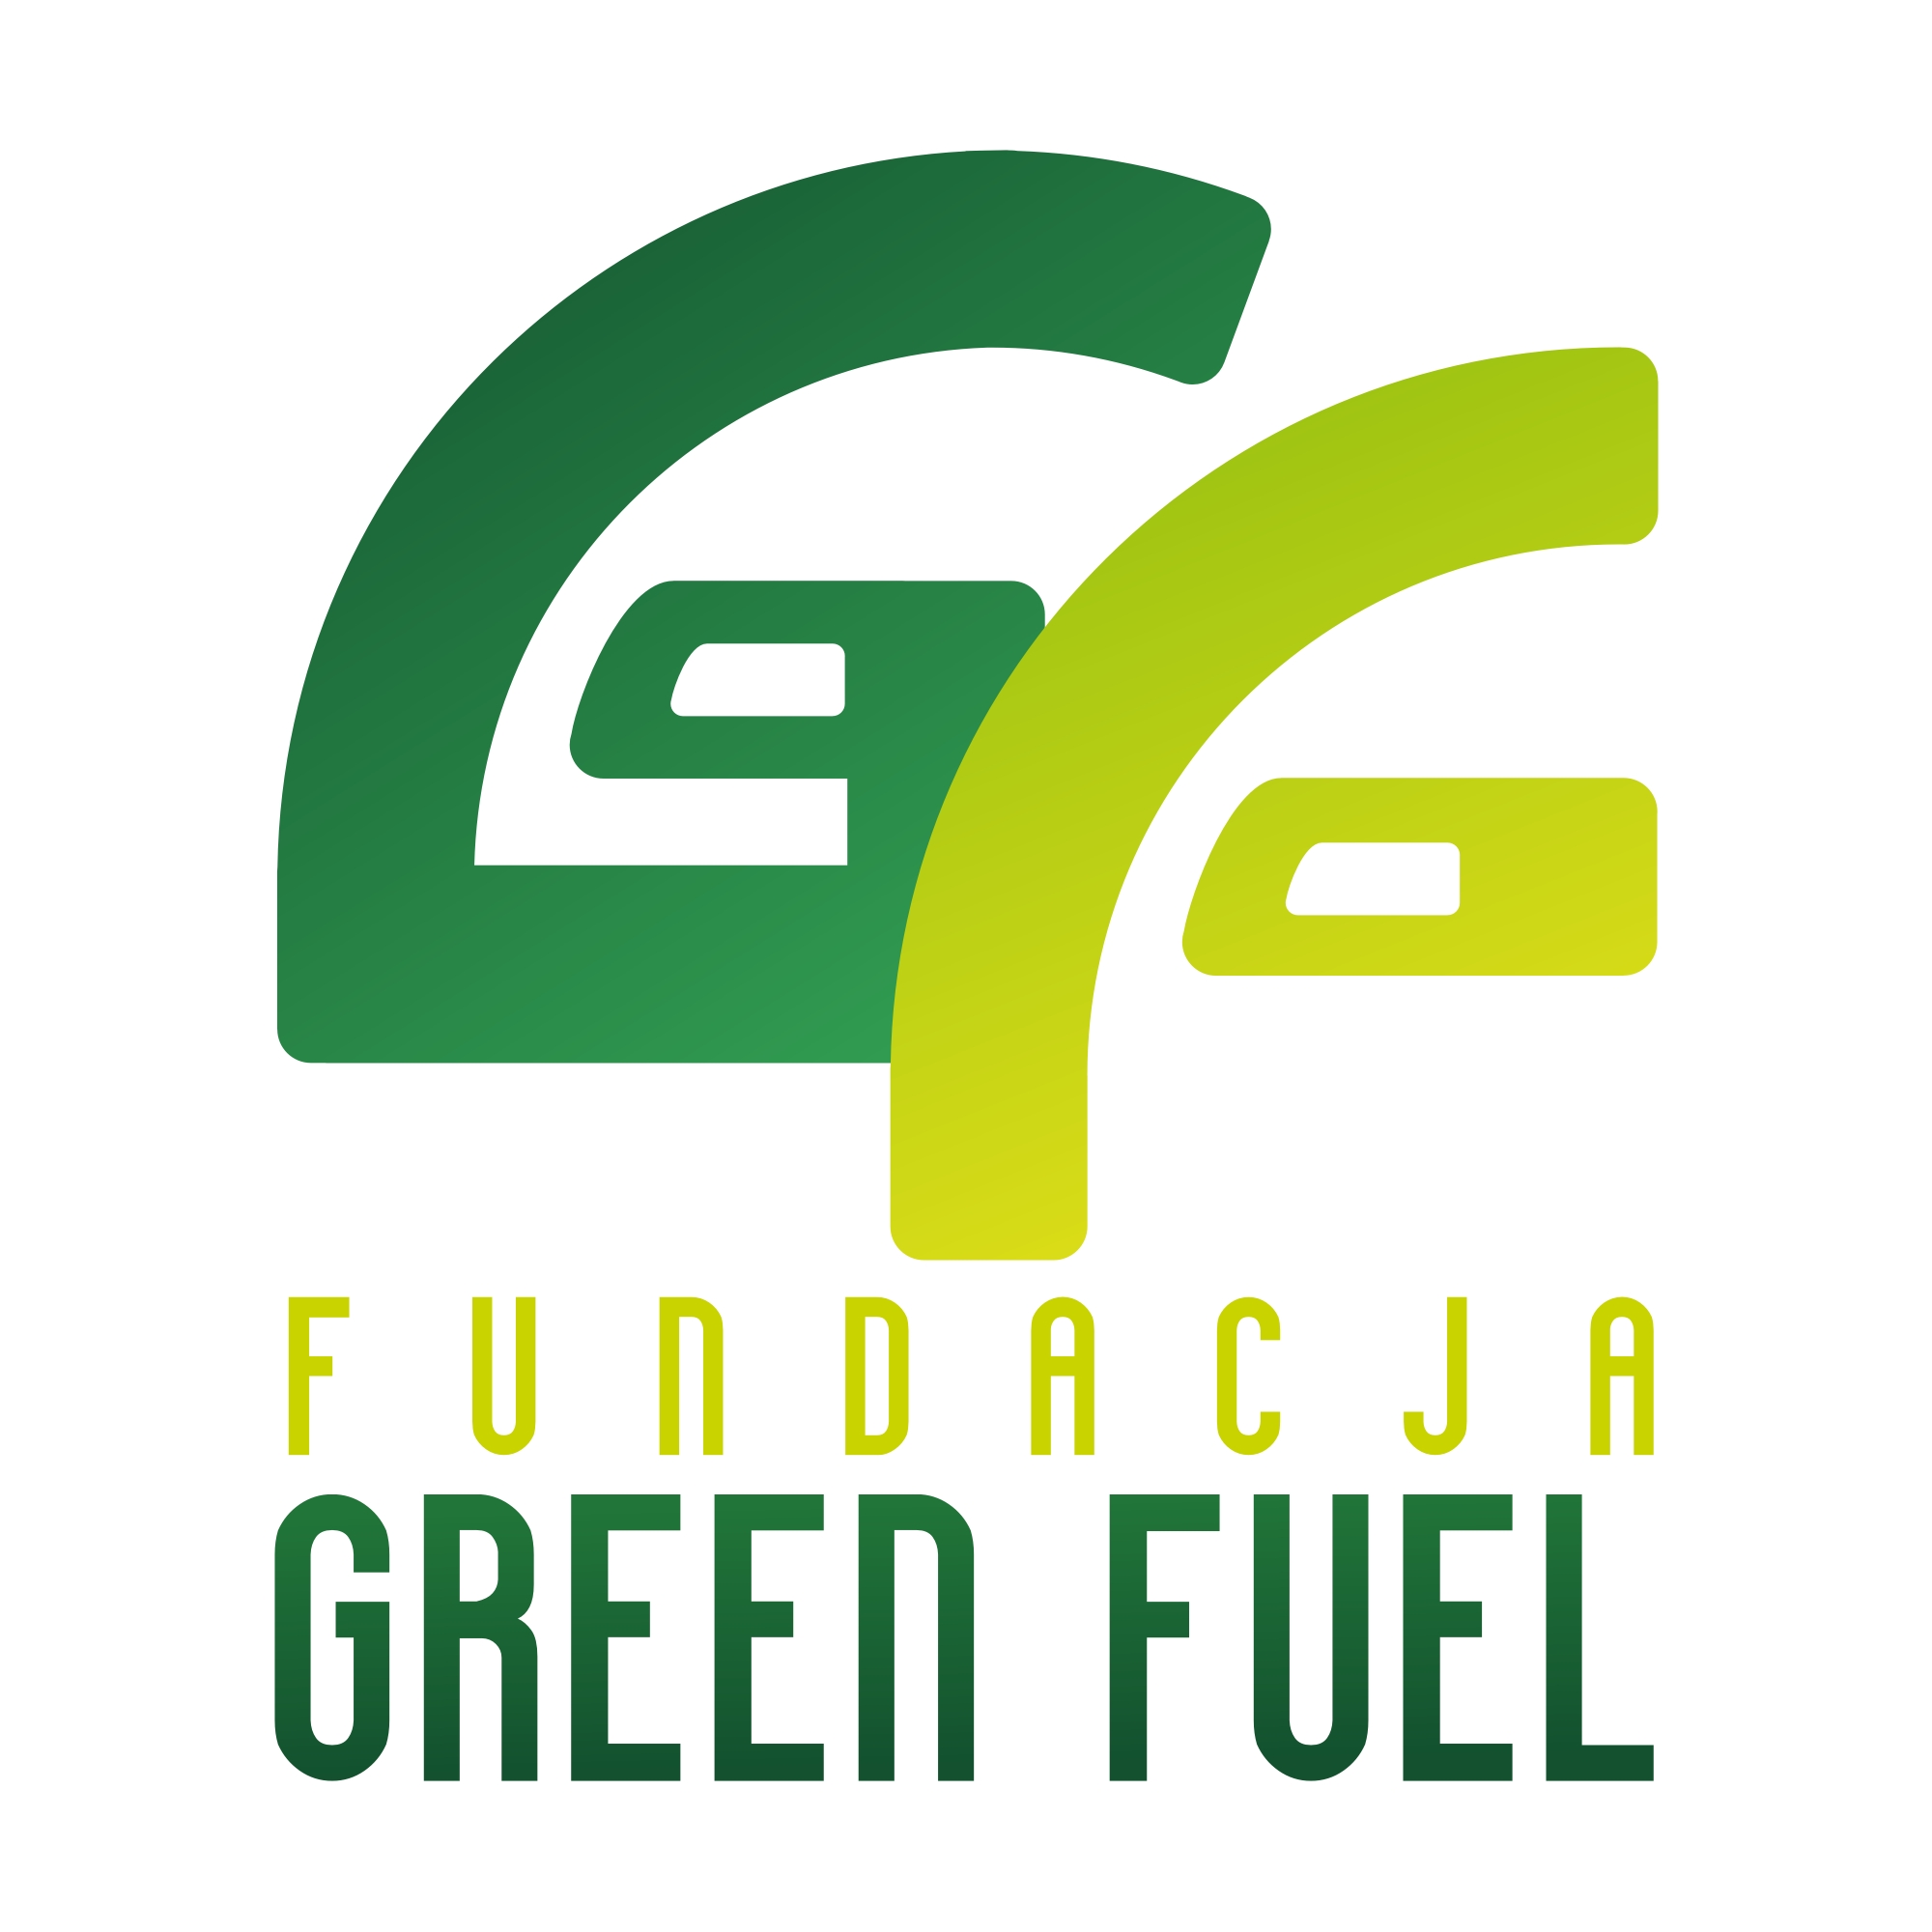 11 greenfuel